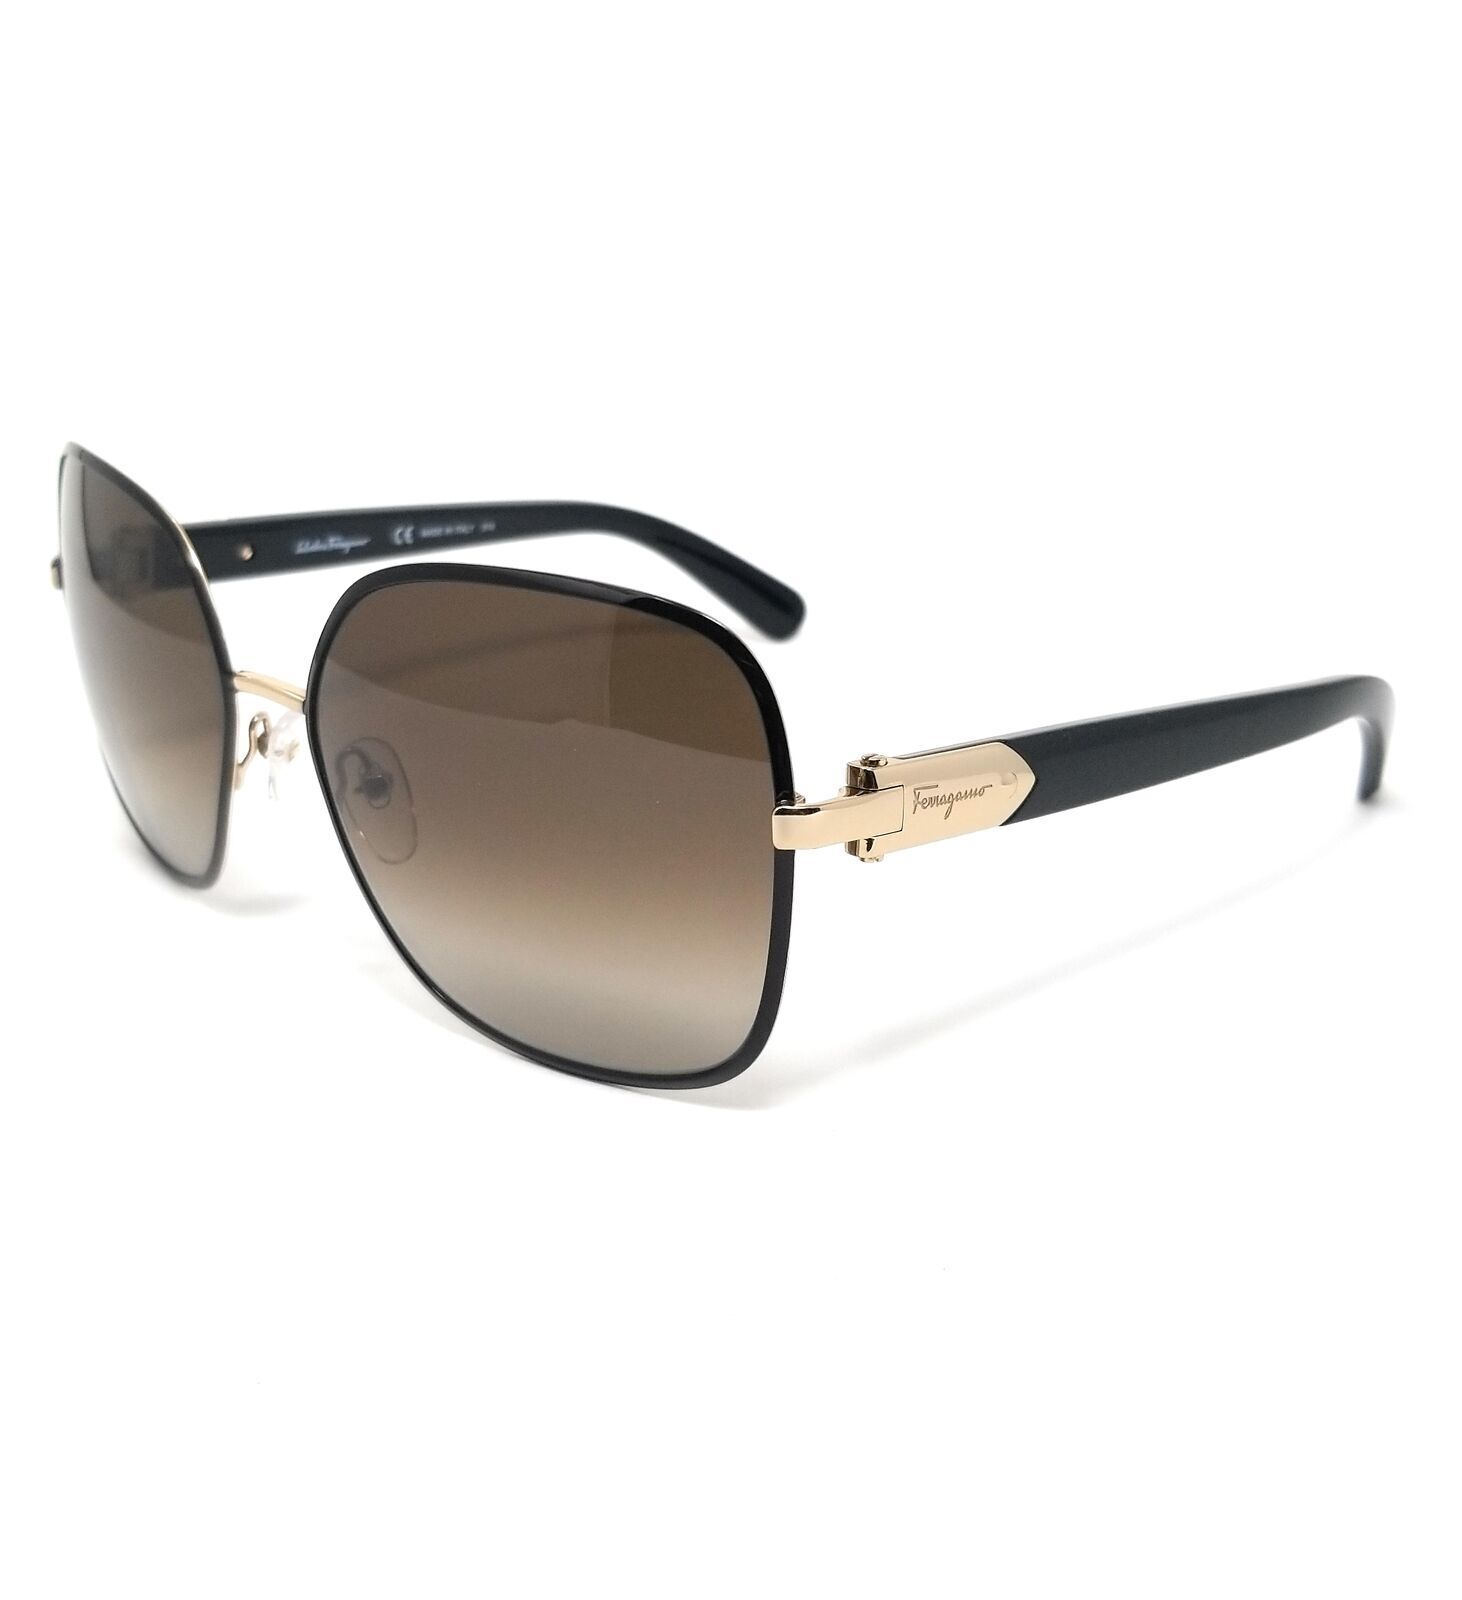 Salvatore Ferragamo Women's Light Gold/Black 59mm Sunglasses SF150S 733 59